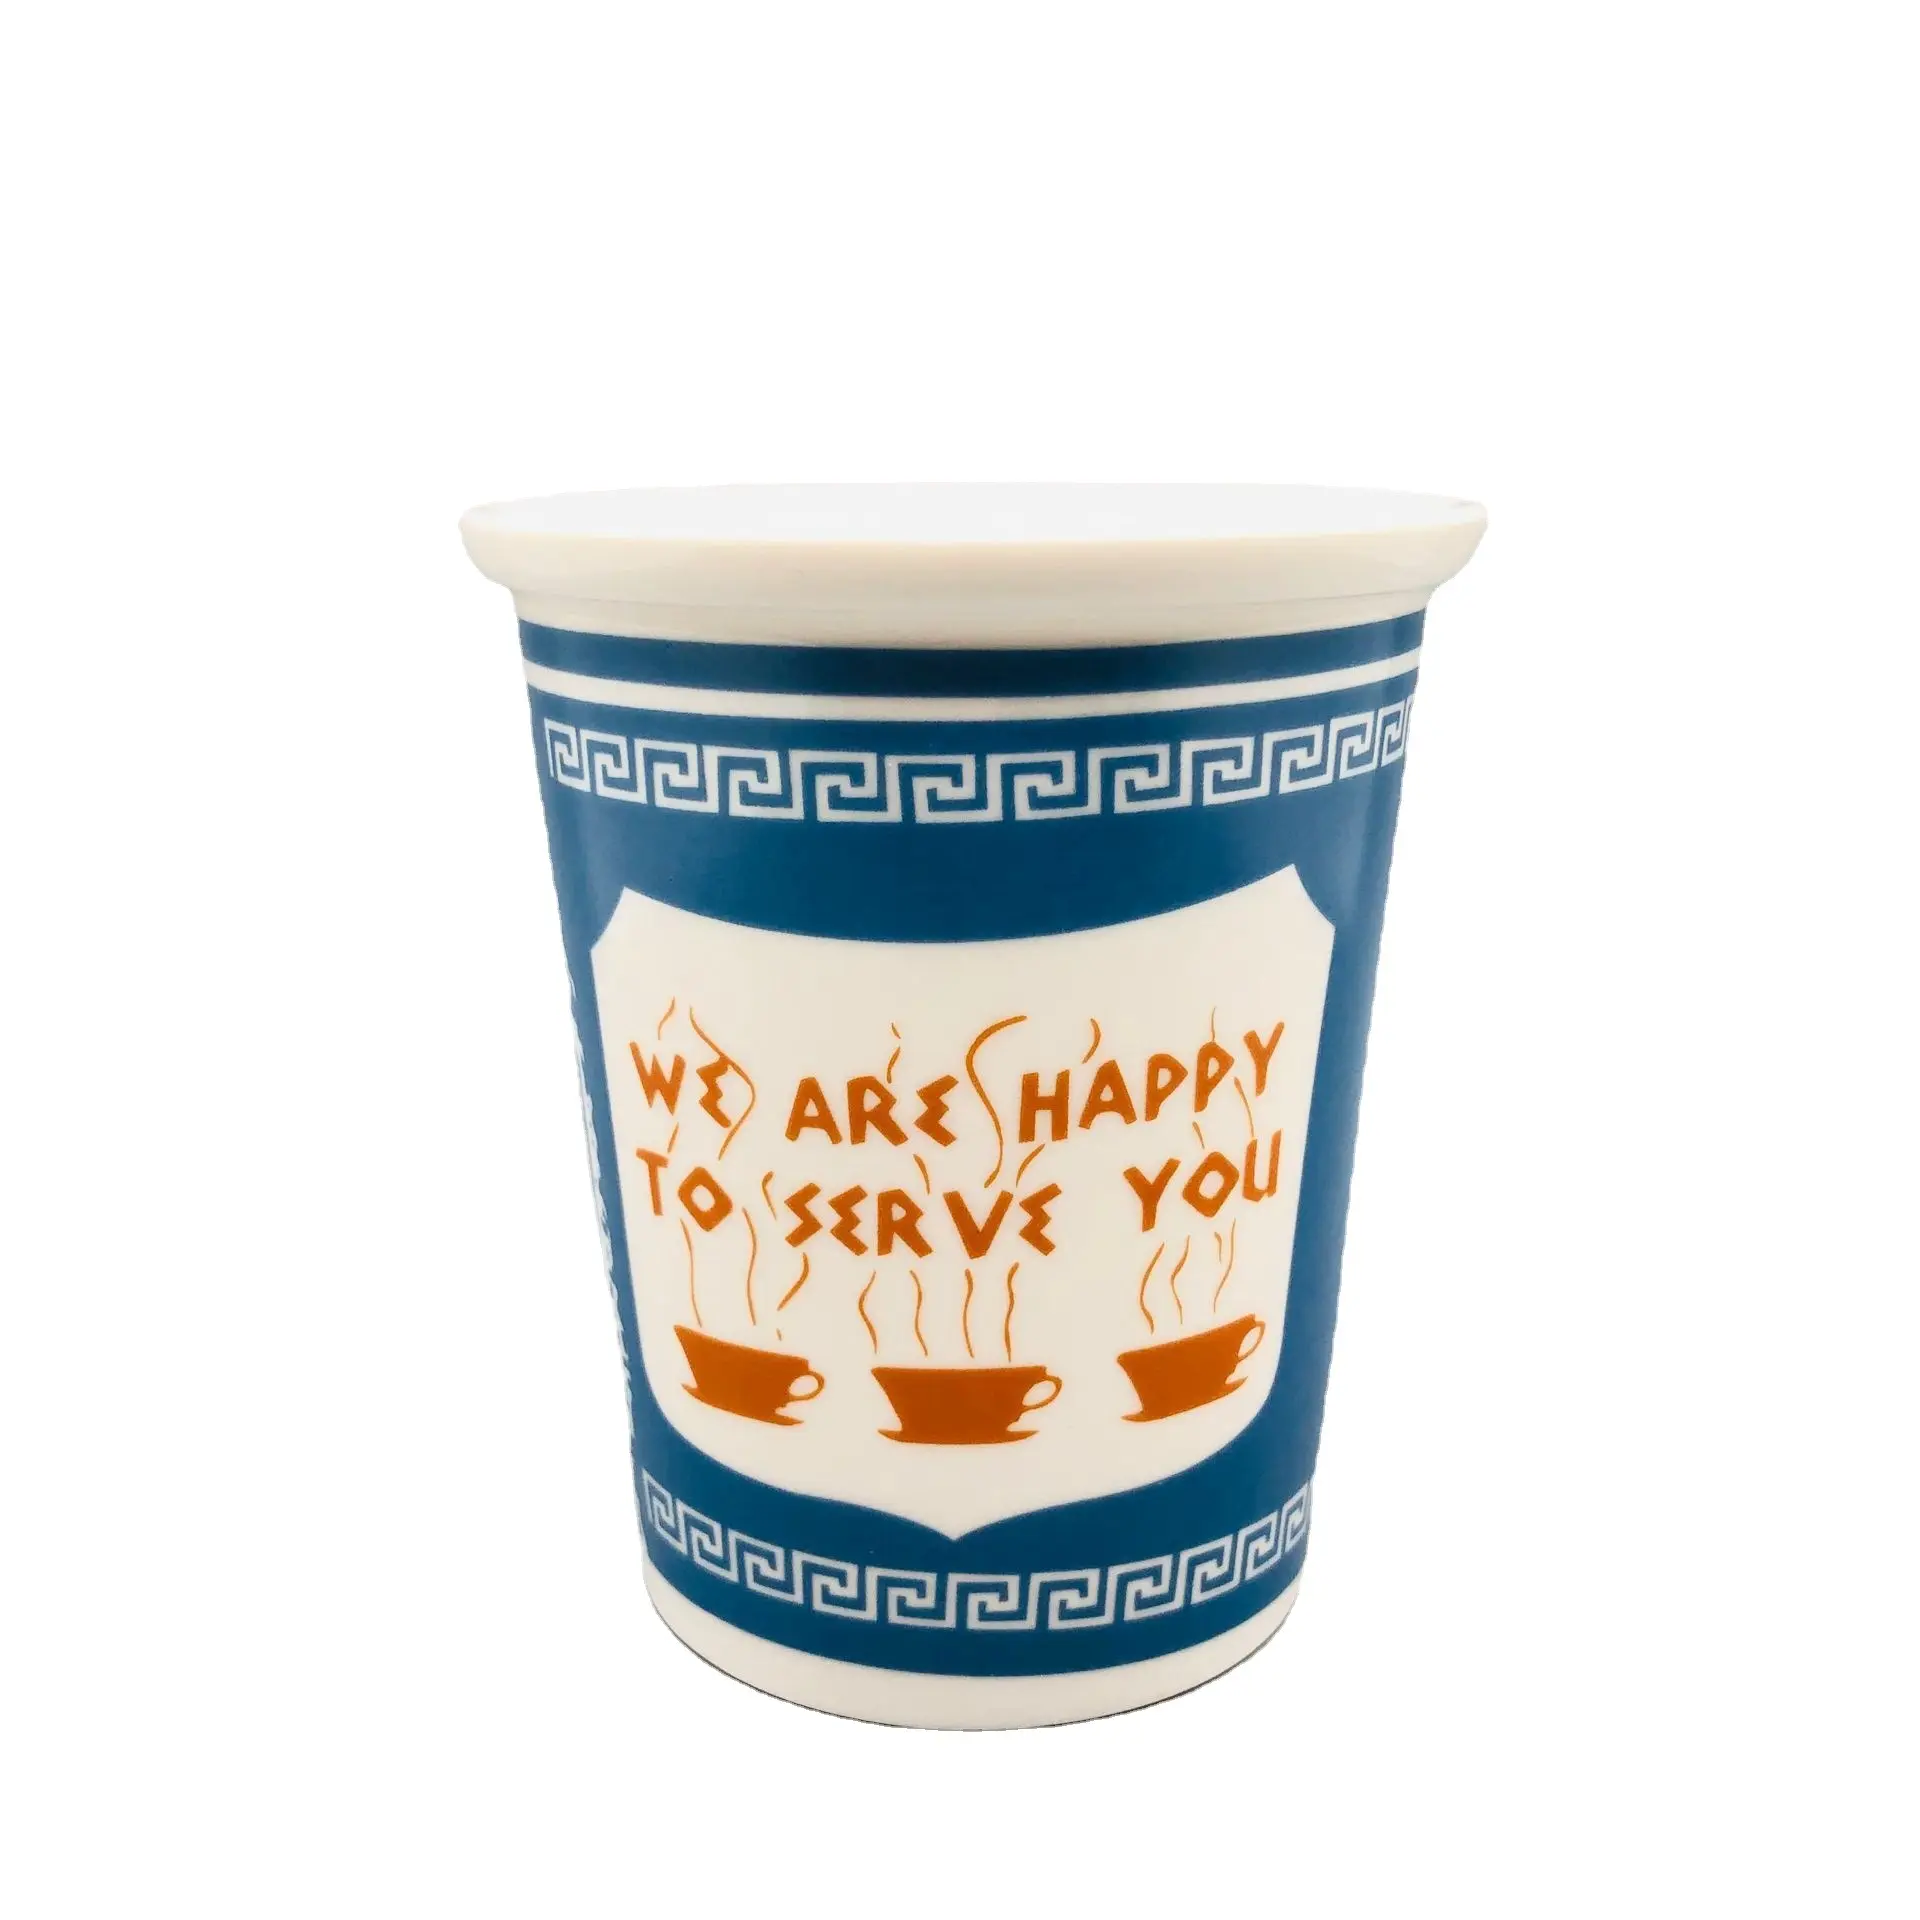 Size hizmet etmekten mutluluk duyuyoruz. Seramik kahve kupa ikonik New York